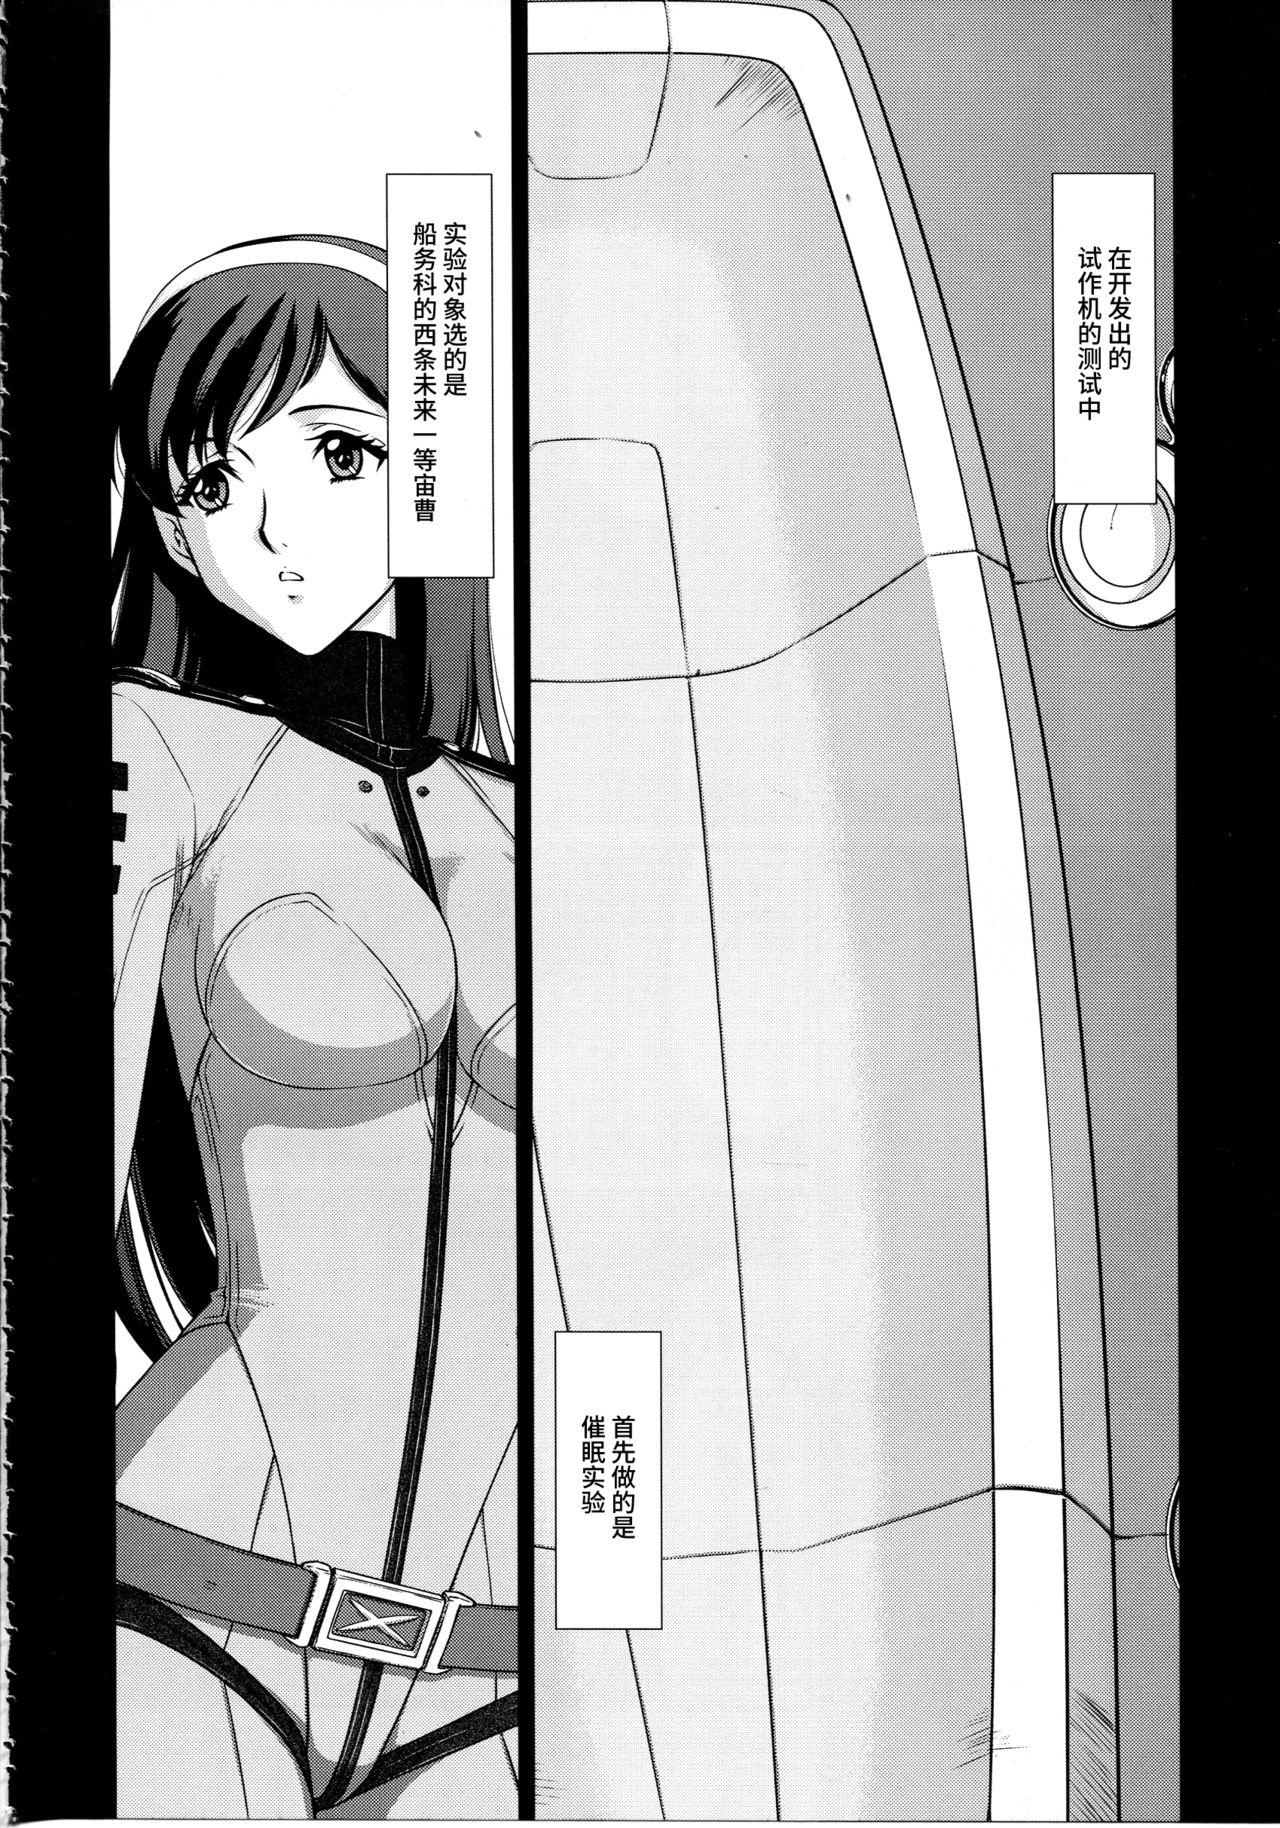 Solo Female Yuki no Shizuku - Space battleship yamato 2199 Hardfuck - Page 5